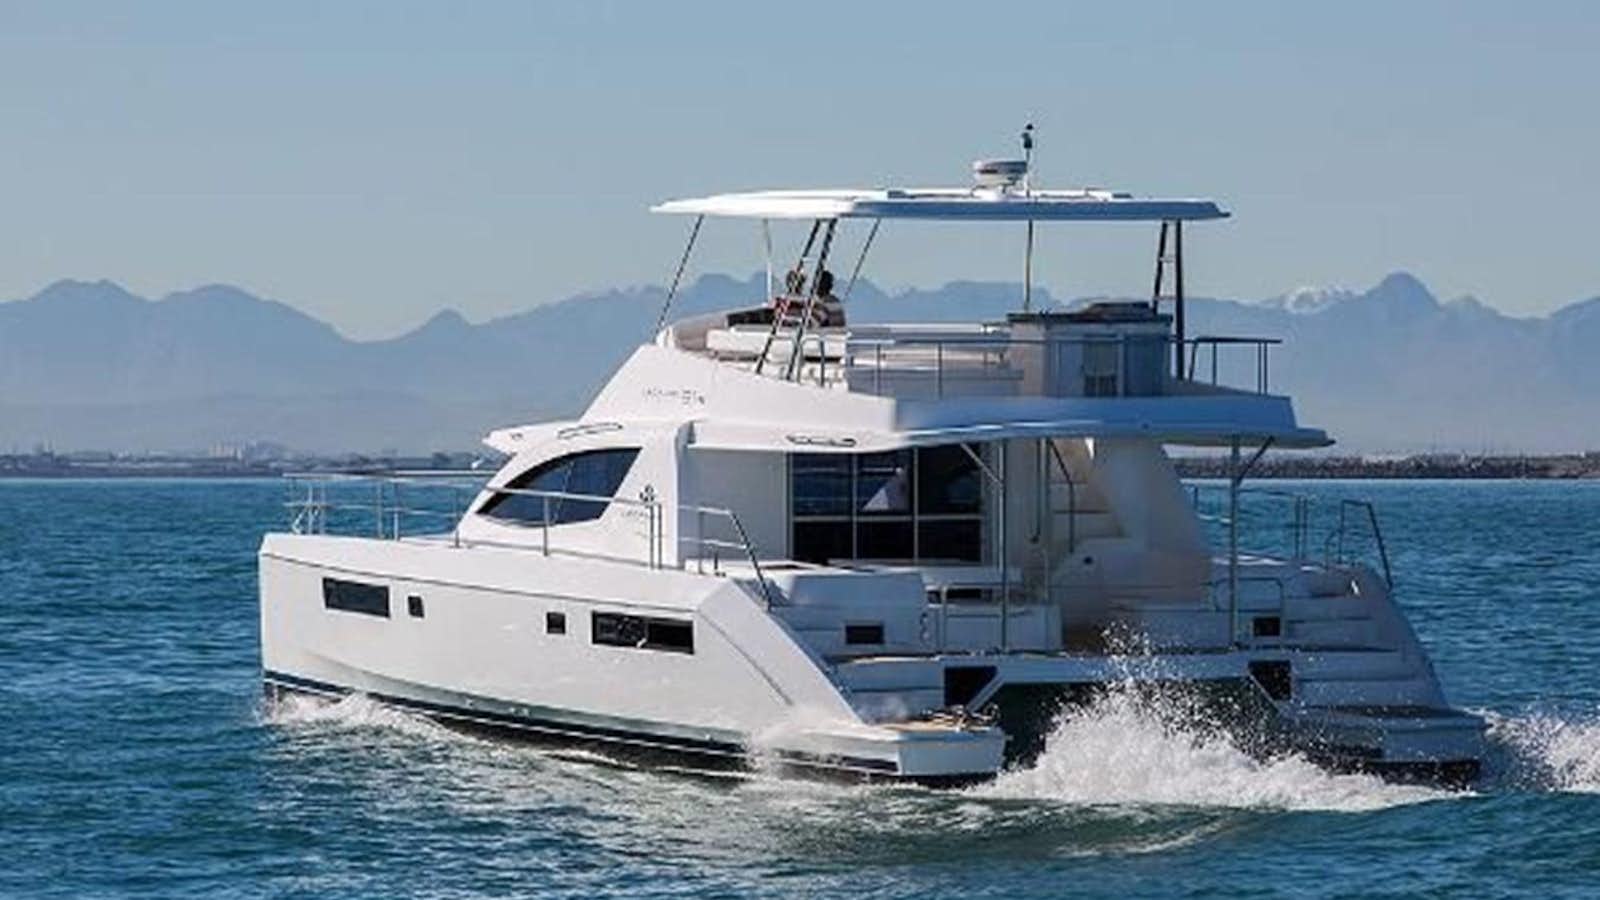 2019 leopard 51 powercat
Yacht for Sale